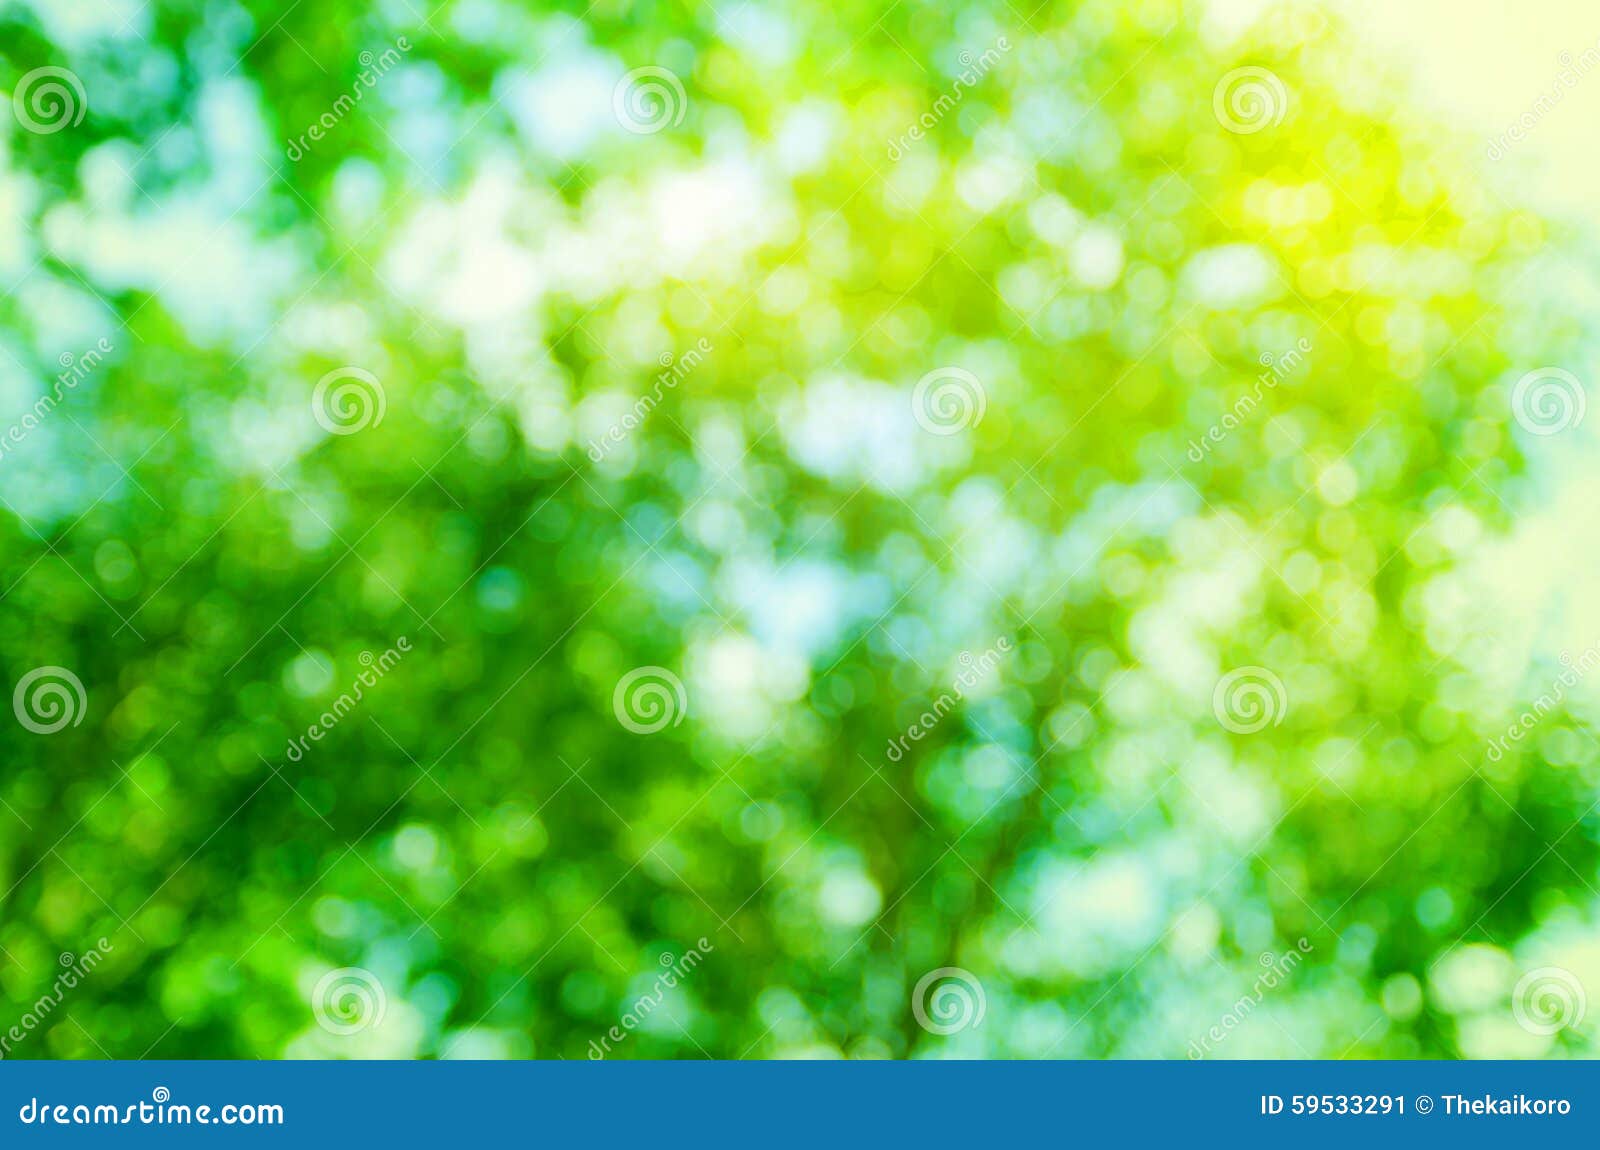 Thử xem bức ảnh nền cây xanh độ phân giải cao này, bạn sẽ không thể rời mắt ra được! Các chi tiết cực kỳ sắc nét và màu sắc tự nhiên, như những cánh hoa nhỏ, sắc màu lá xanh tươi sáng và dòng chảy suối nước trong rừng sẽ khiến bạn cảm thấy như lạc vào một thế giới hoang sơ và đầy sức sống.